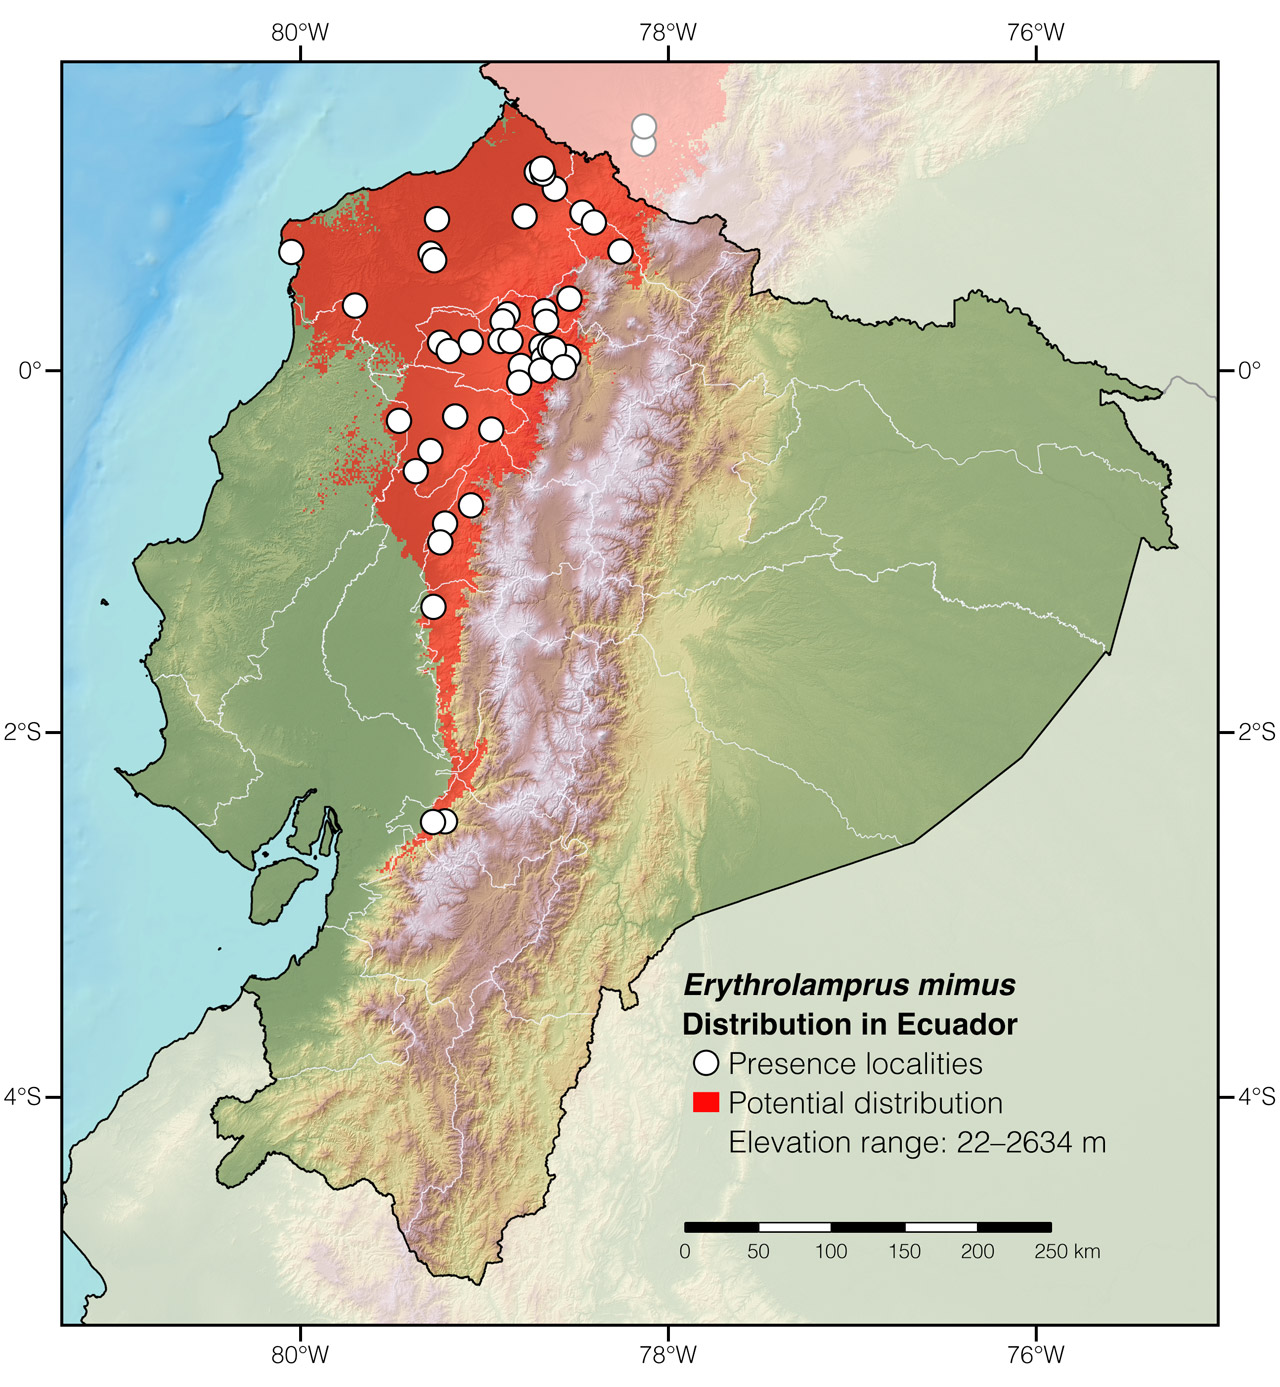 Distribution of Erythrolamprus mimus in Ecuador